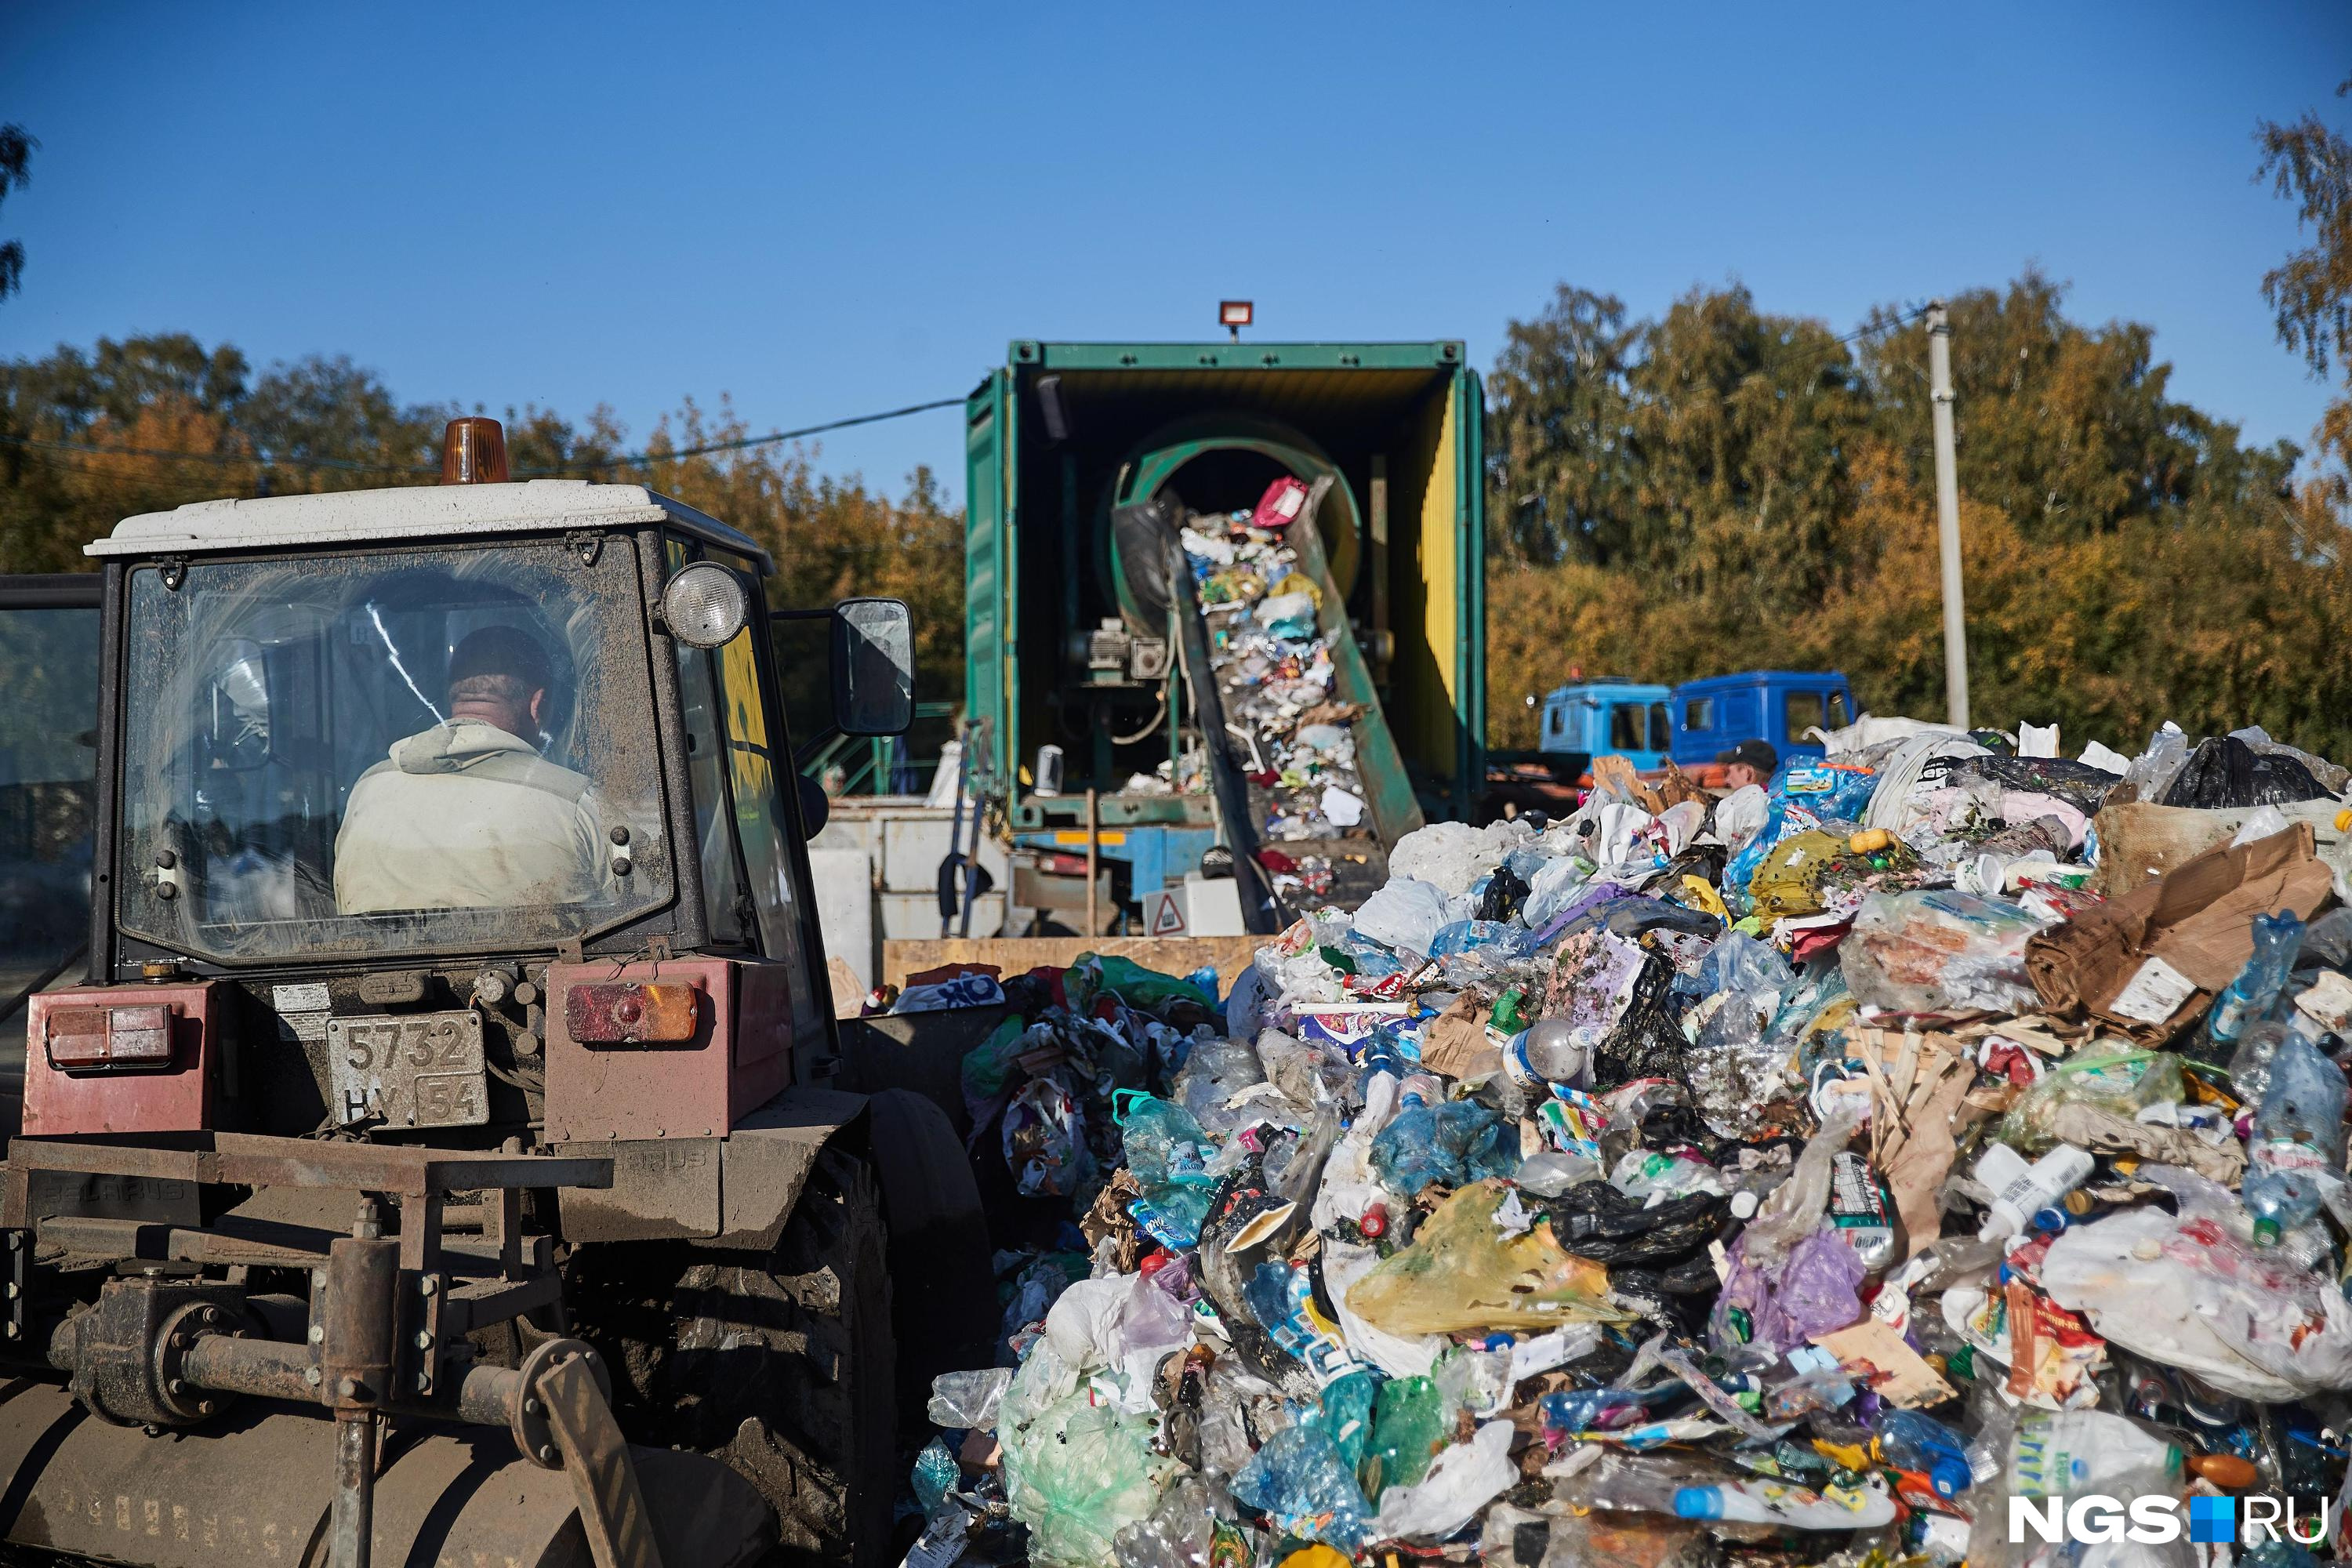 Миллиарды из мусора: куда свозят отходы Кемерова и Новокузнецка и кто зарабатывает миллионы на этом